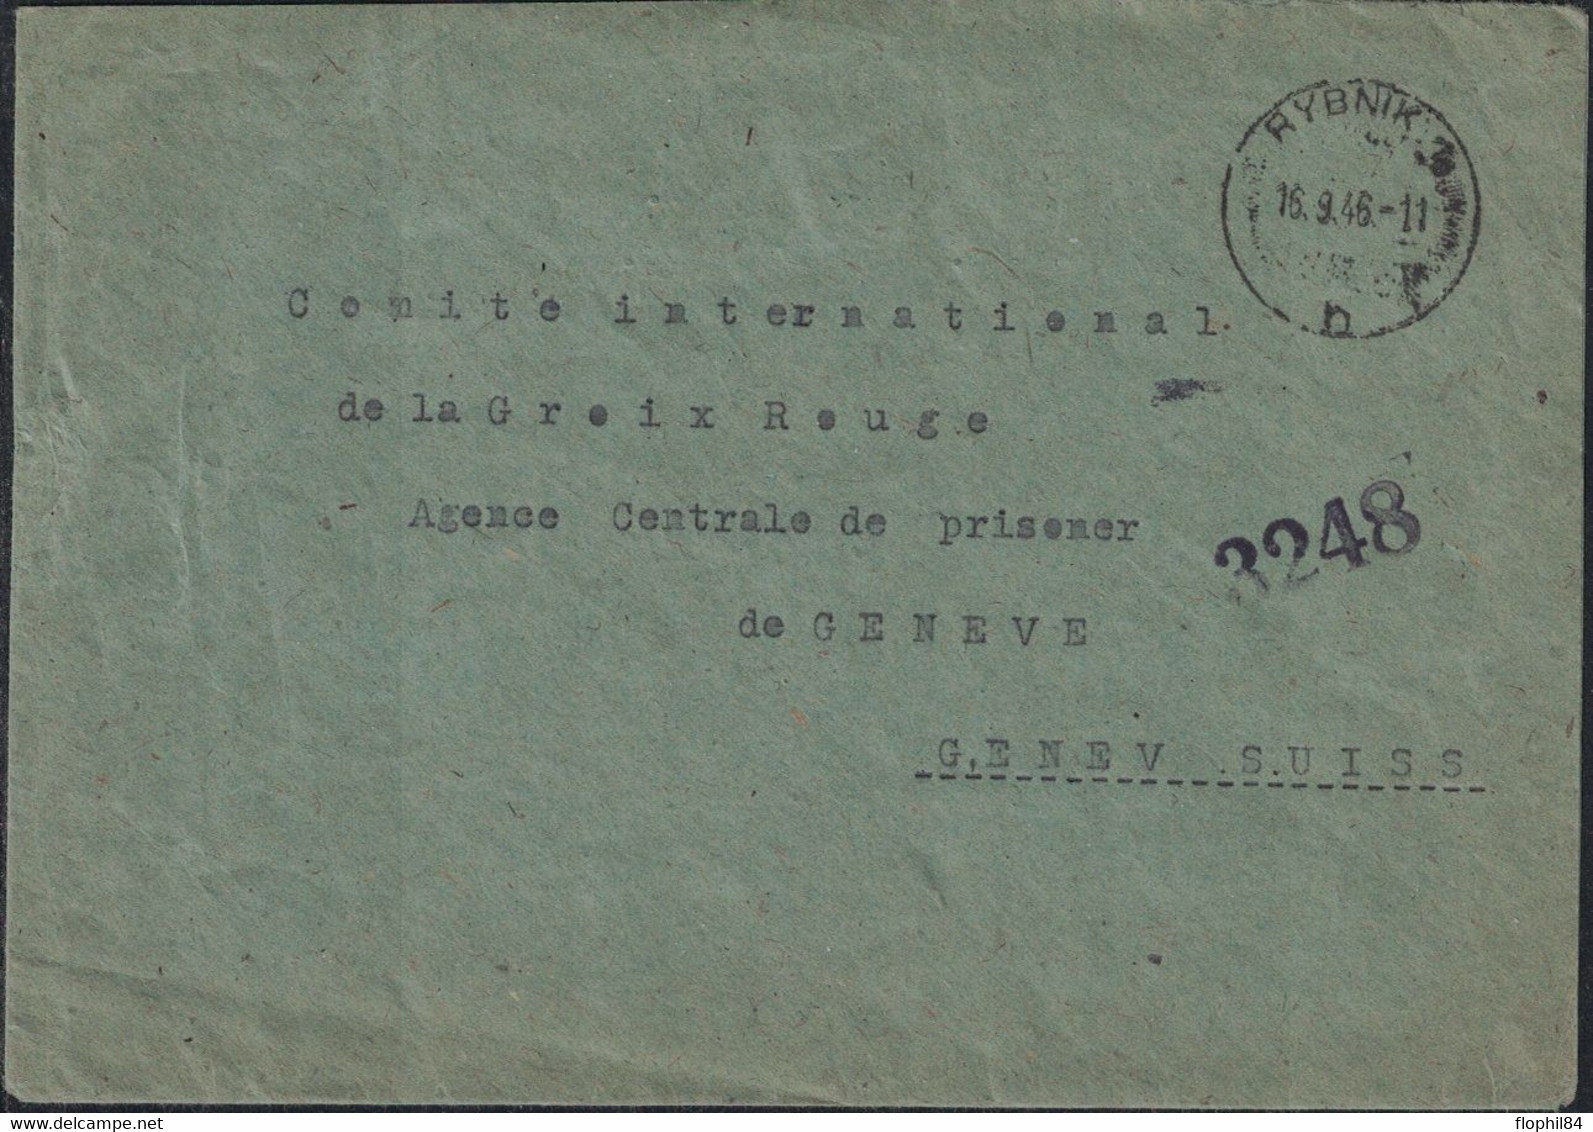 POLOGNE - LETTRE DE RYBNIK LE 16-9-1946 POUR LA CROIX ROUGE AGENCE DES PRISONNIERS DE GENEVE - SUISSE - AFFRANCHISSEMENT - Covers & Documents